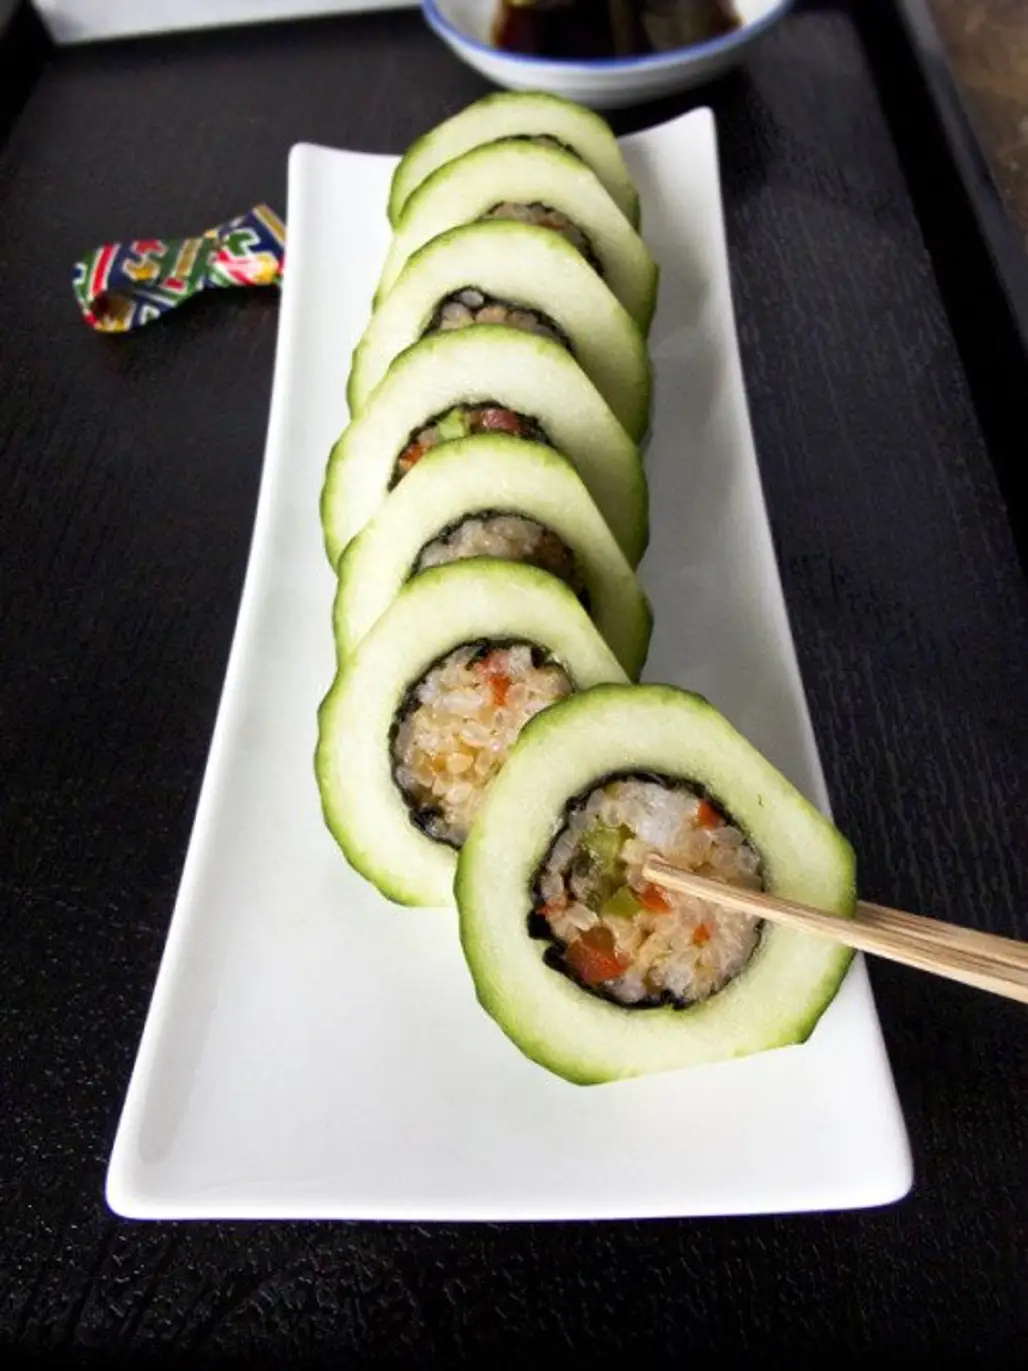 Cucumber Roll